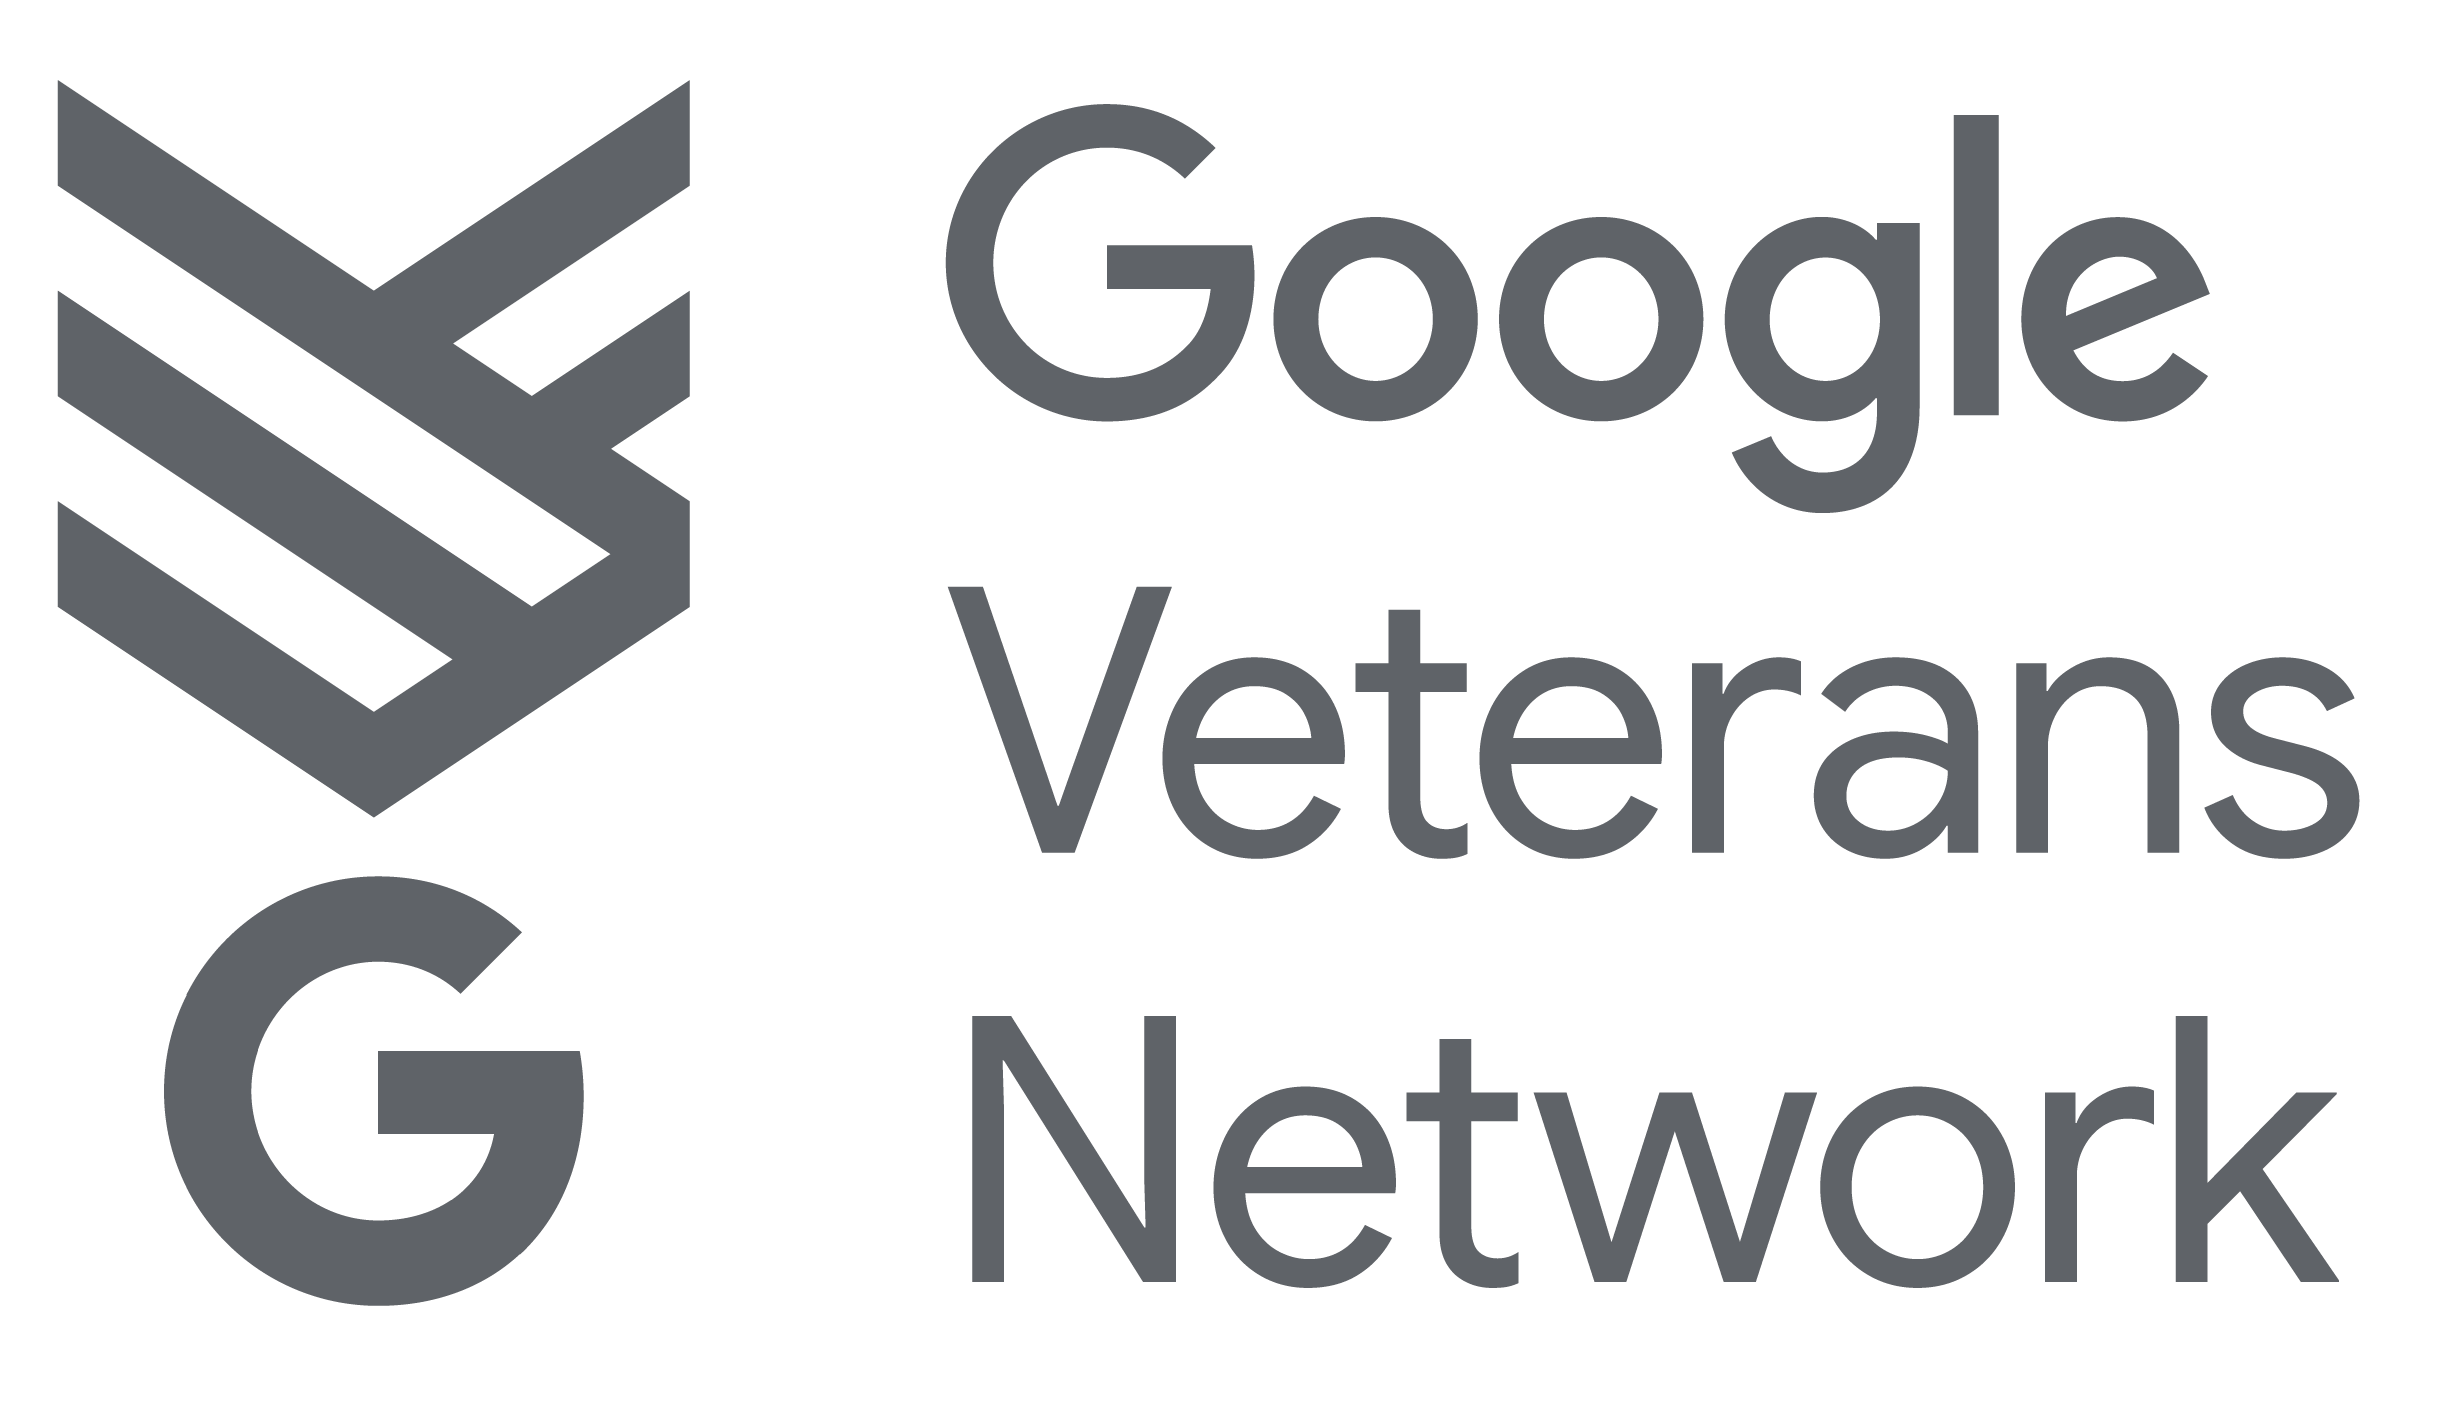 Google Veterans Network